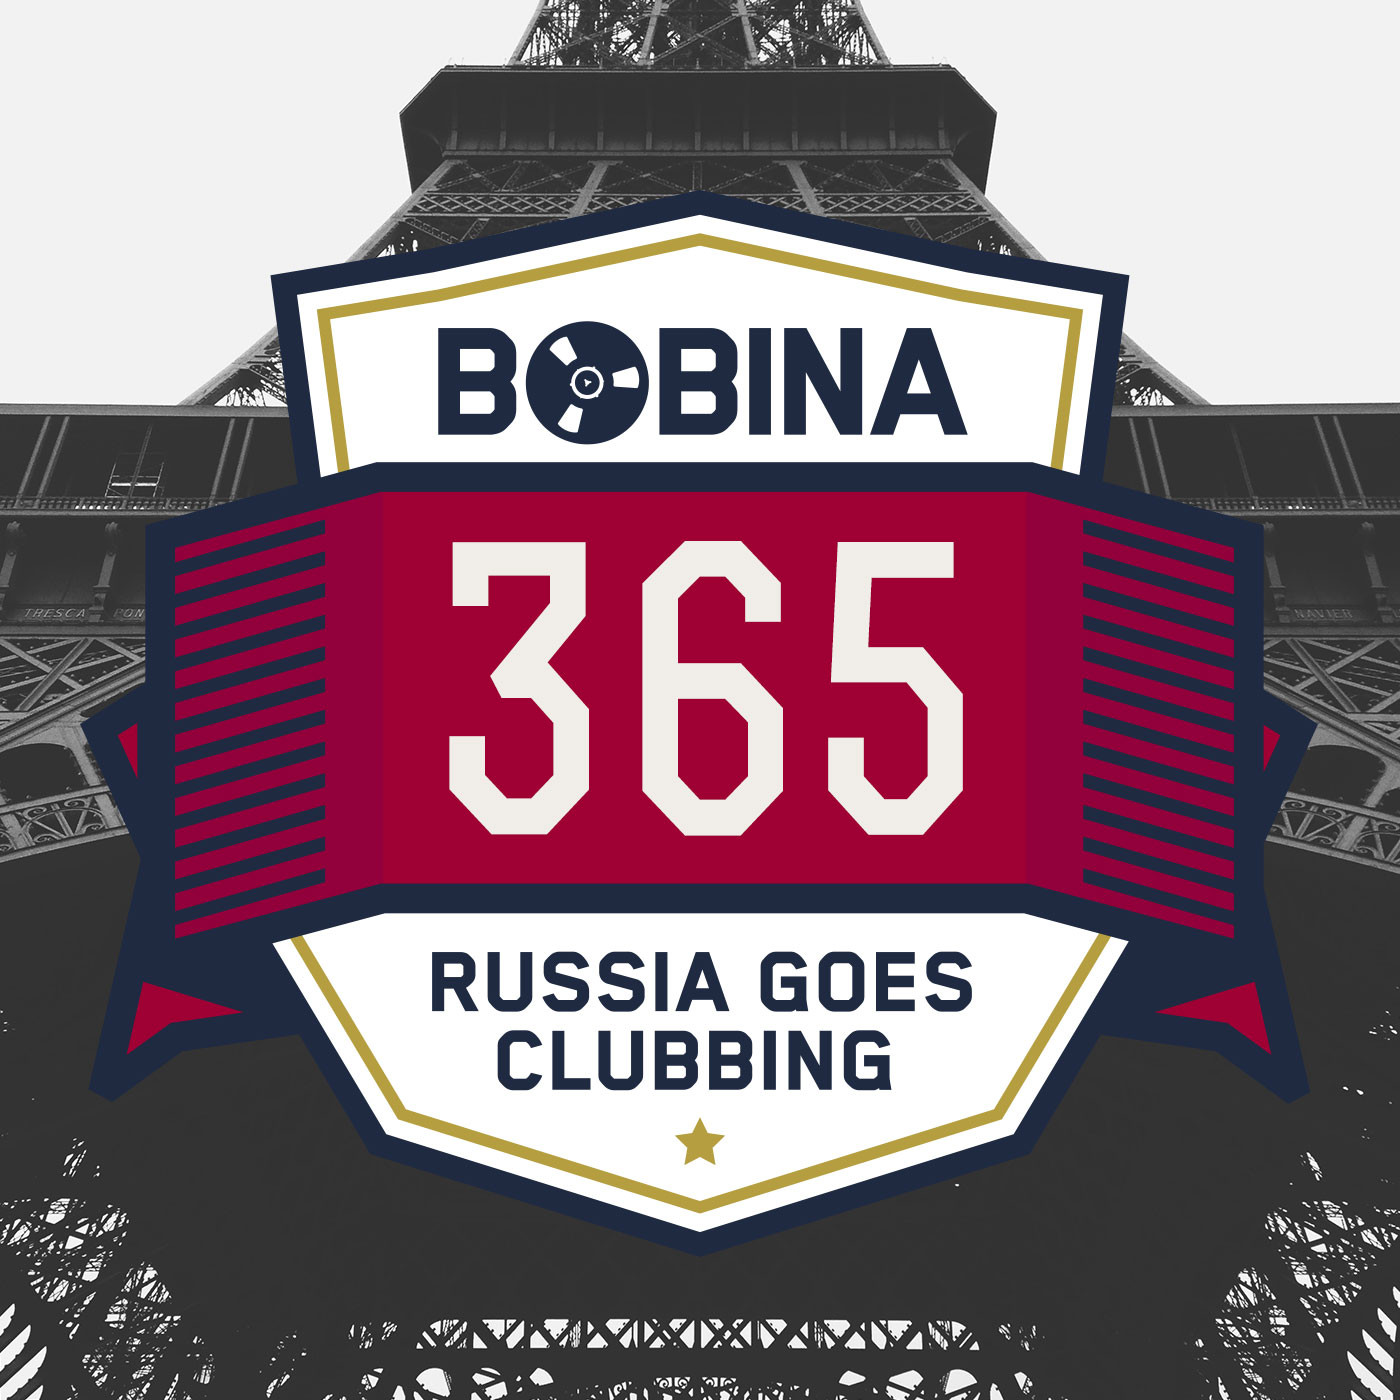 Гоу раша. Bobina - Russia goes Clubbing. Россия 365. Айм гоу клаб. How to go to russia